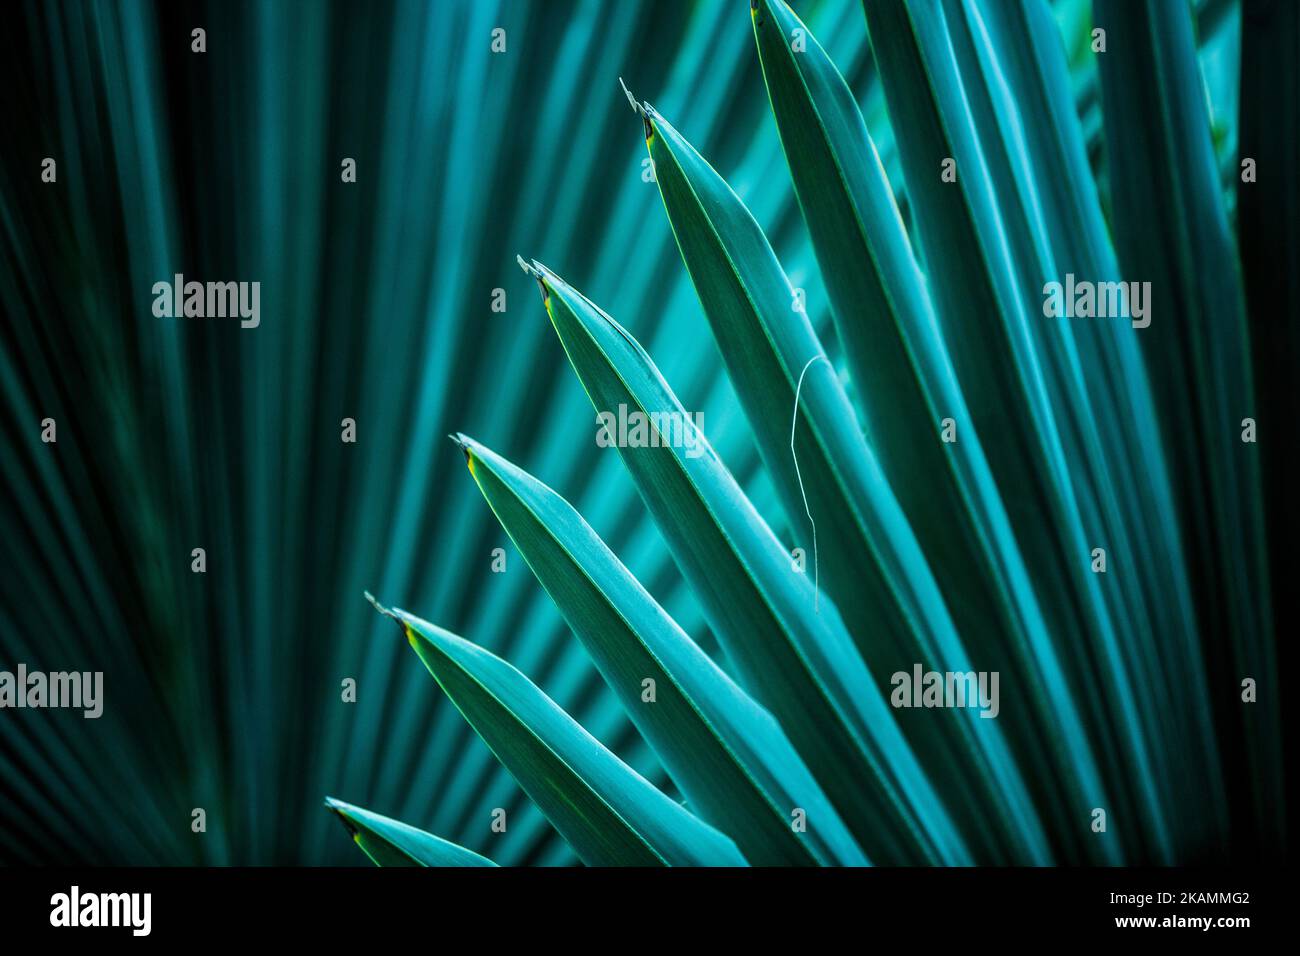 Dettagli delle foglie di palma in diverse sfumature e colori Foto Stock